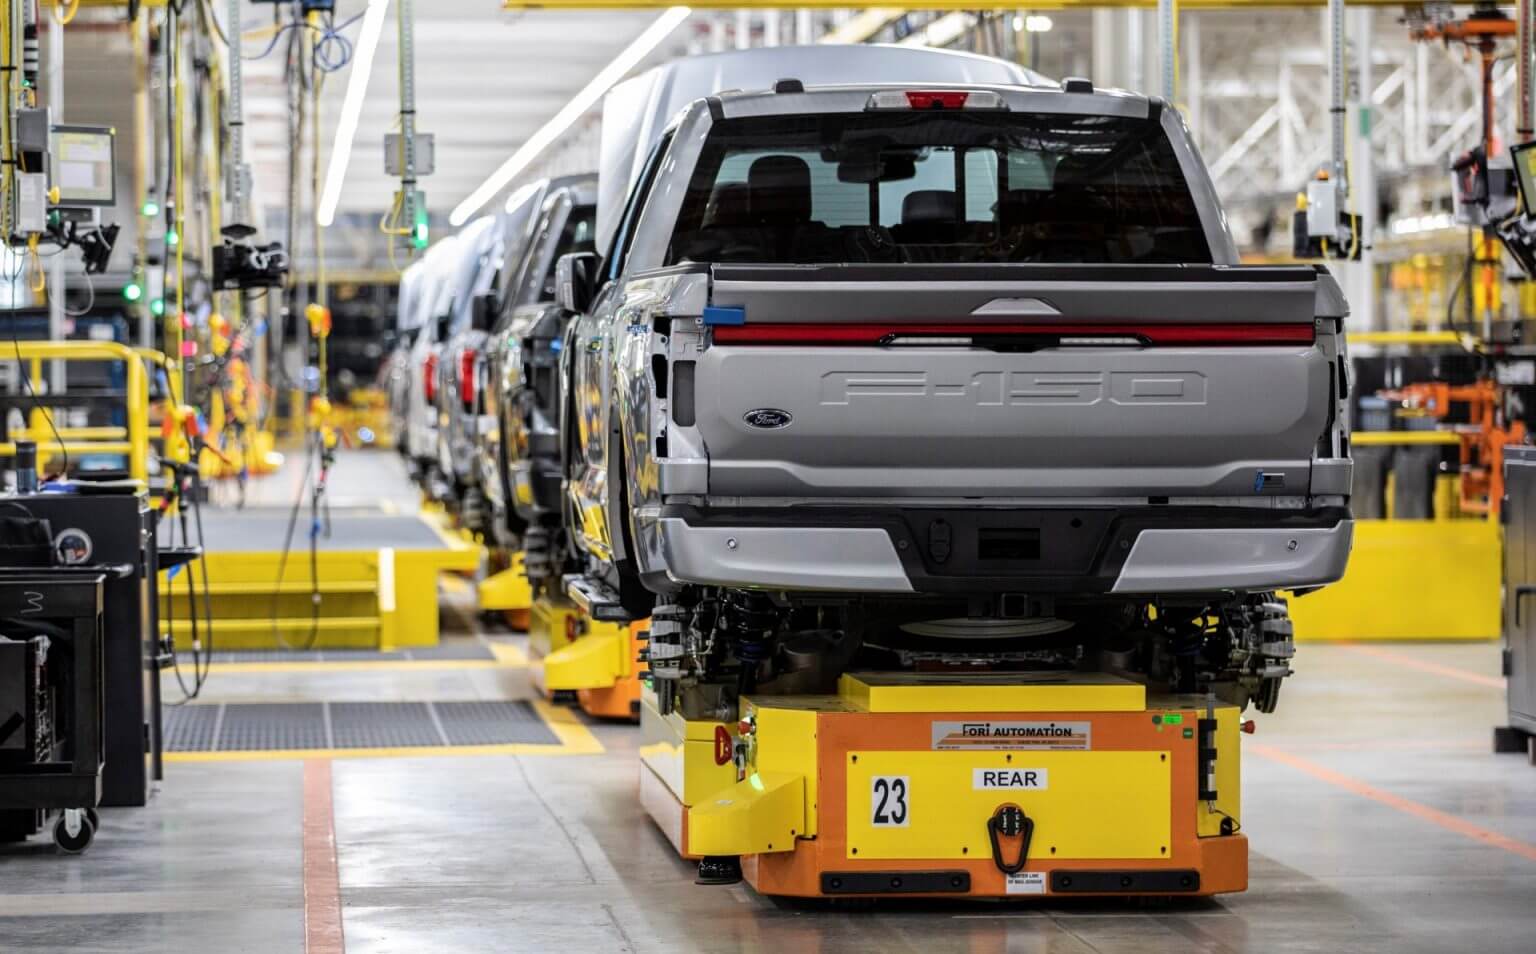 Ford удваивает продажи электромобилей, несмотря на большие потери в первом квартале